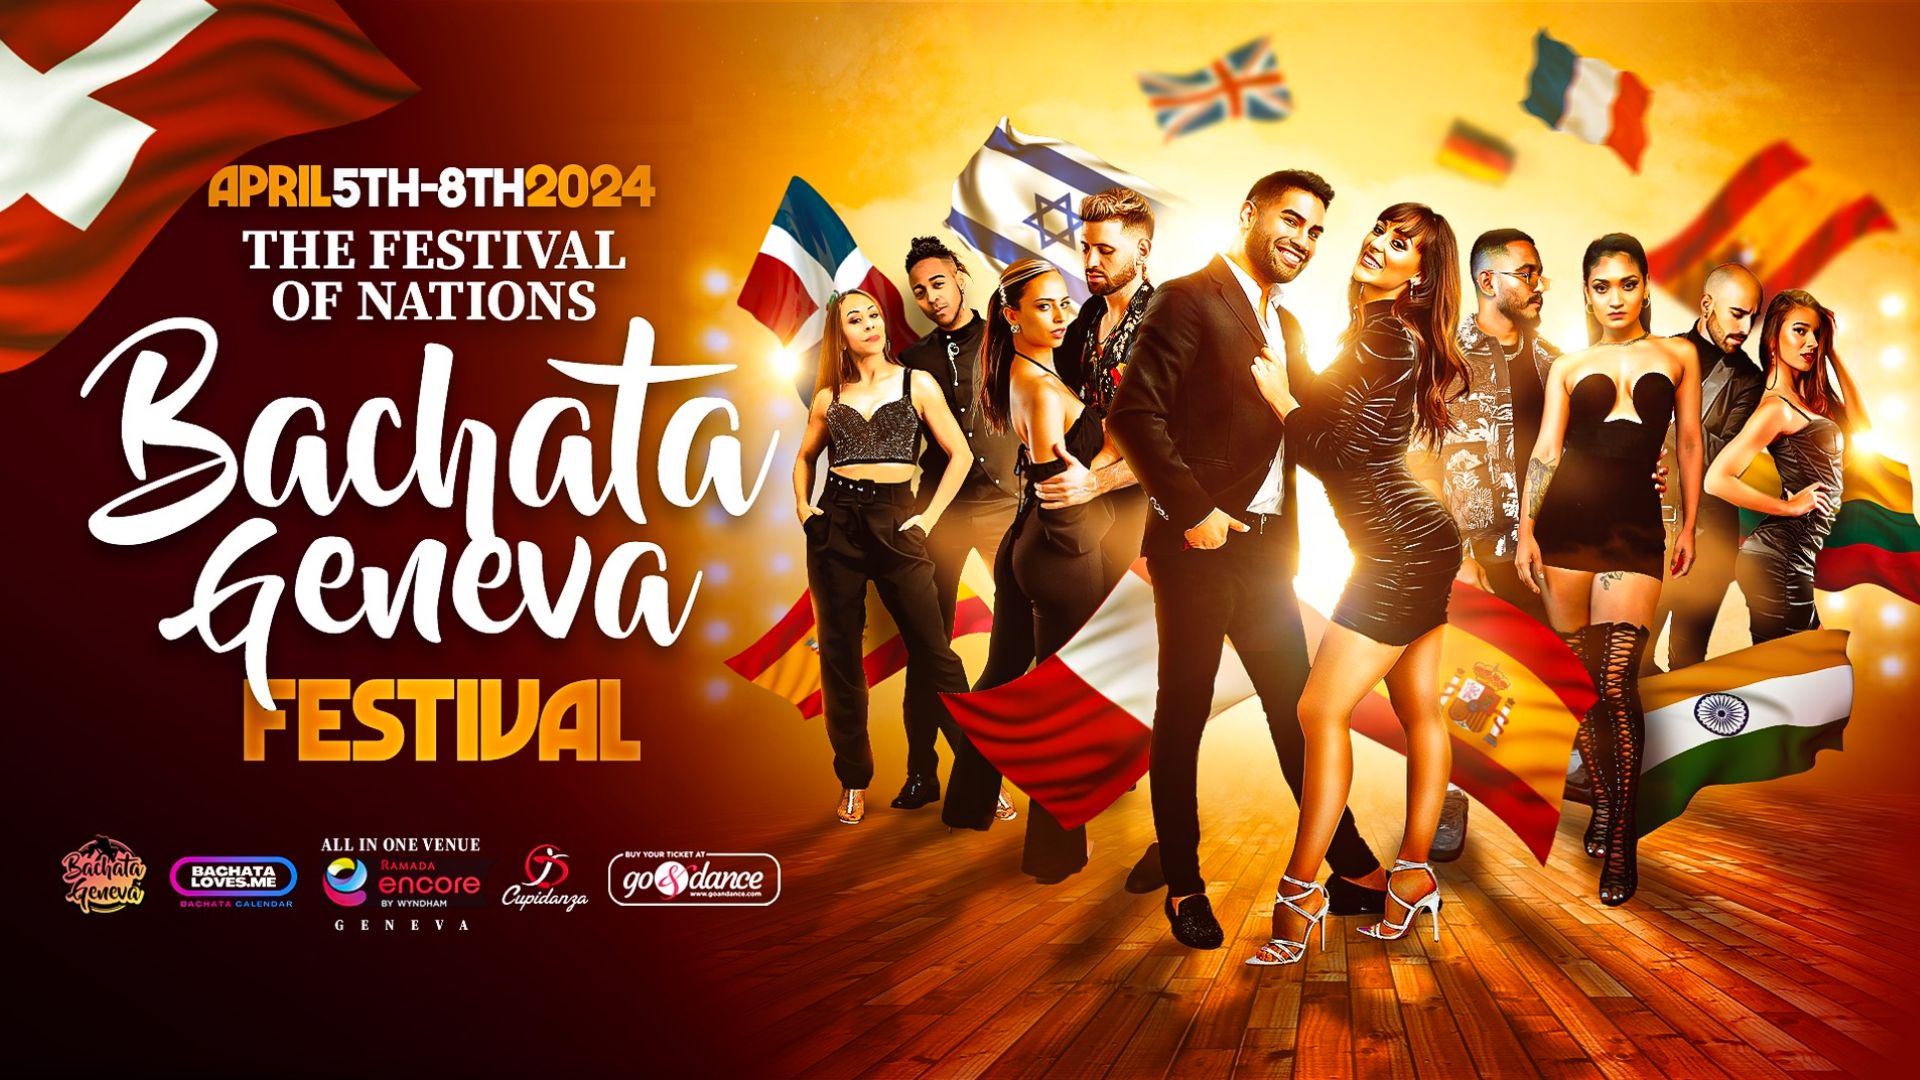 Bachata Geneva Festival 2024 The Festival of Nations bachataloves